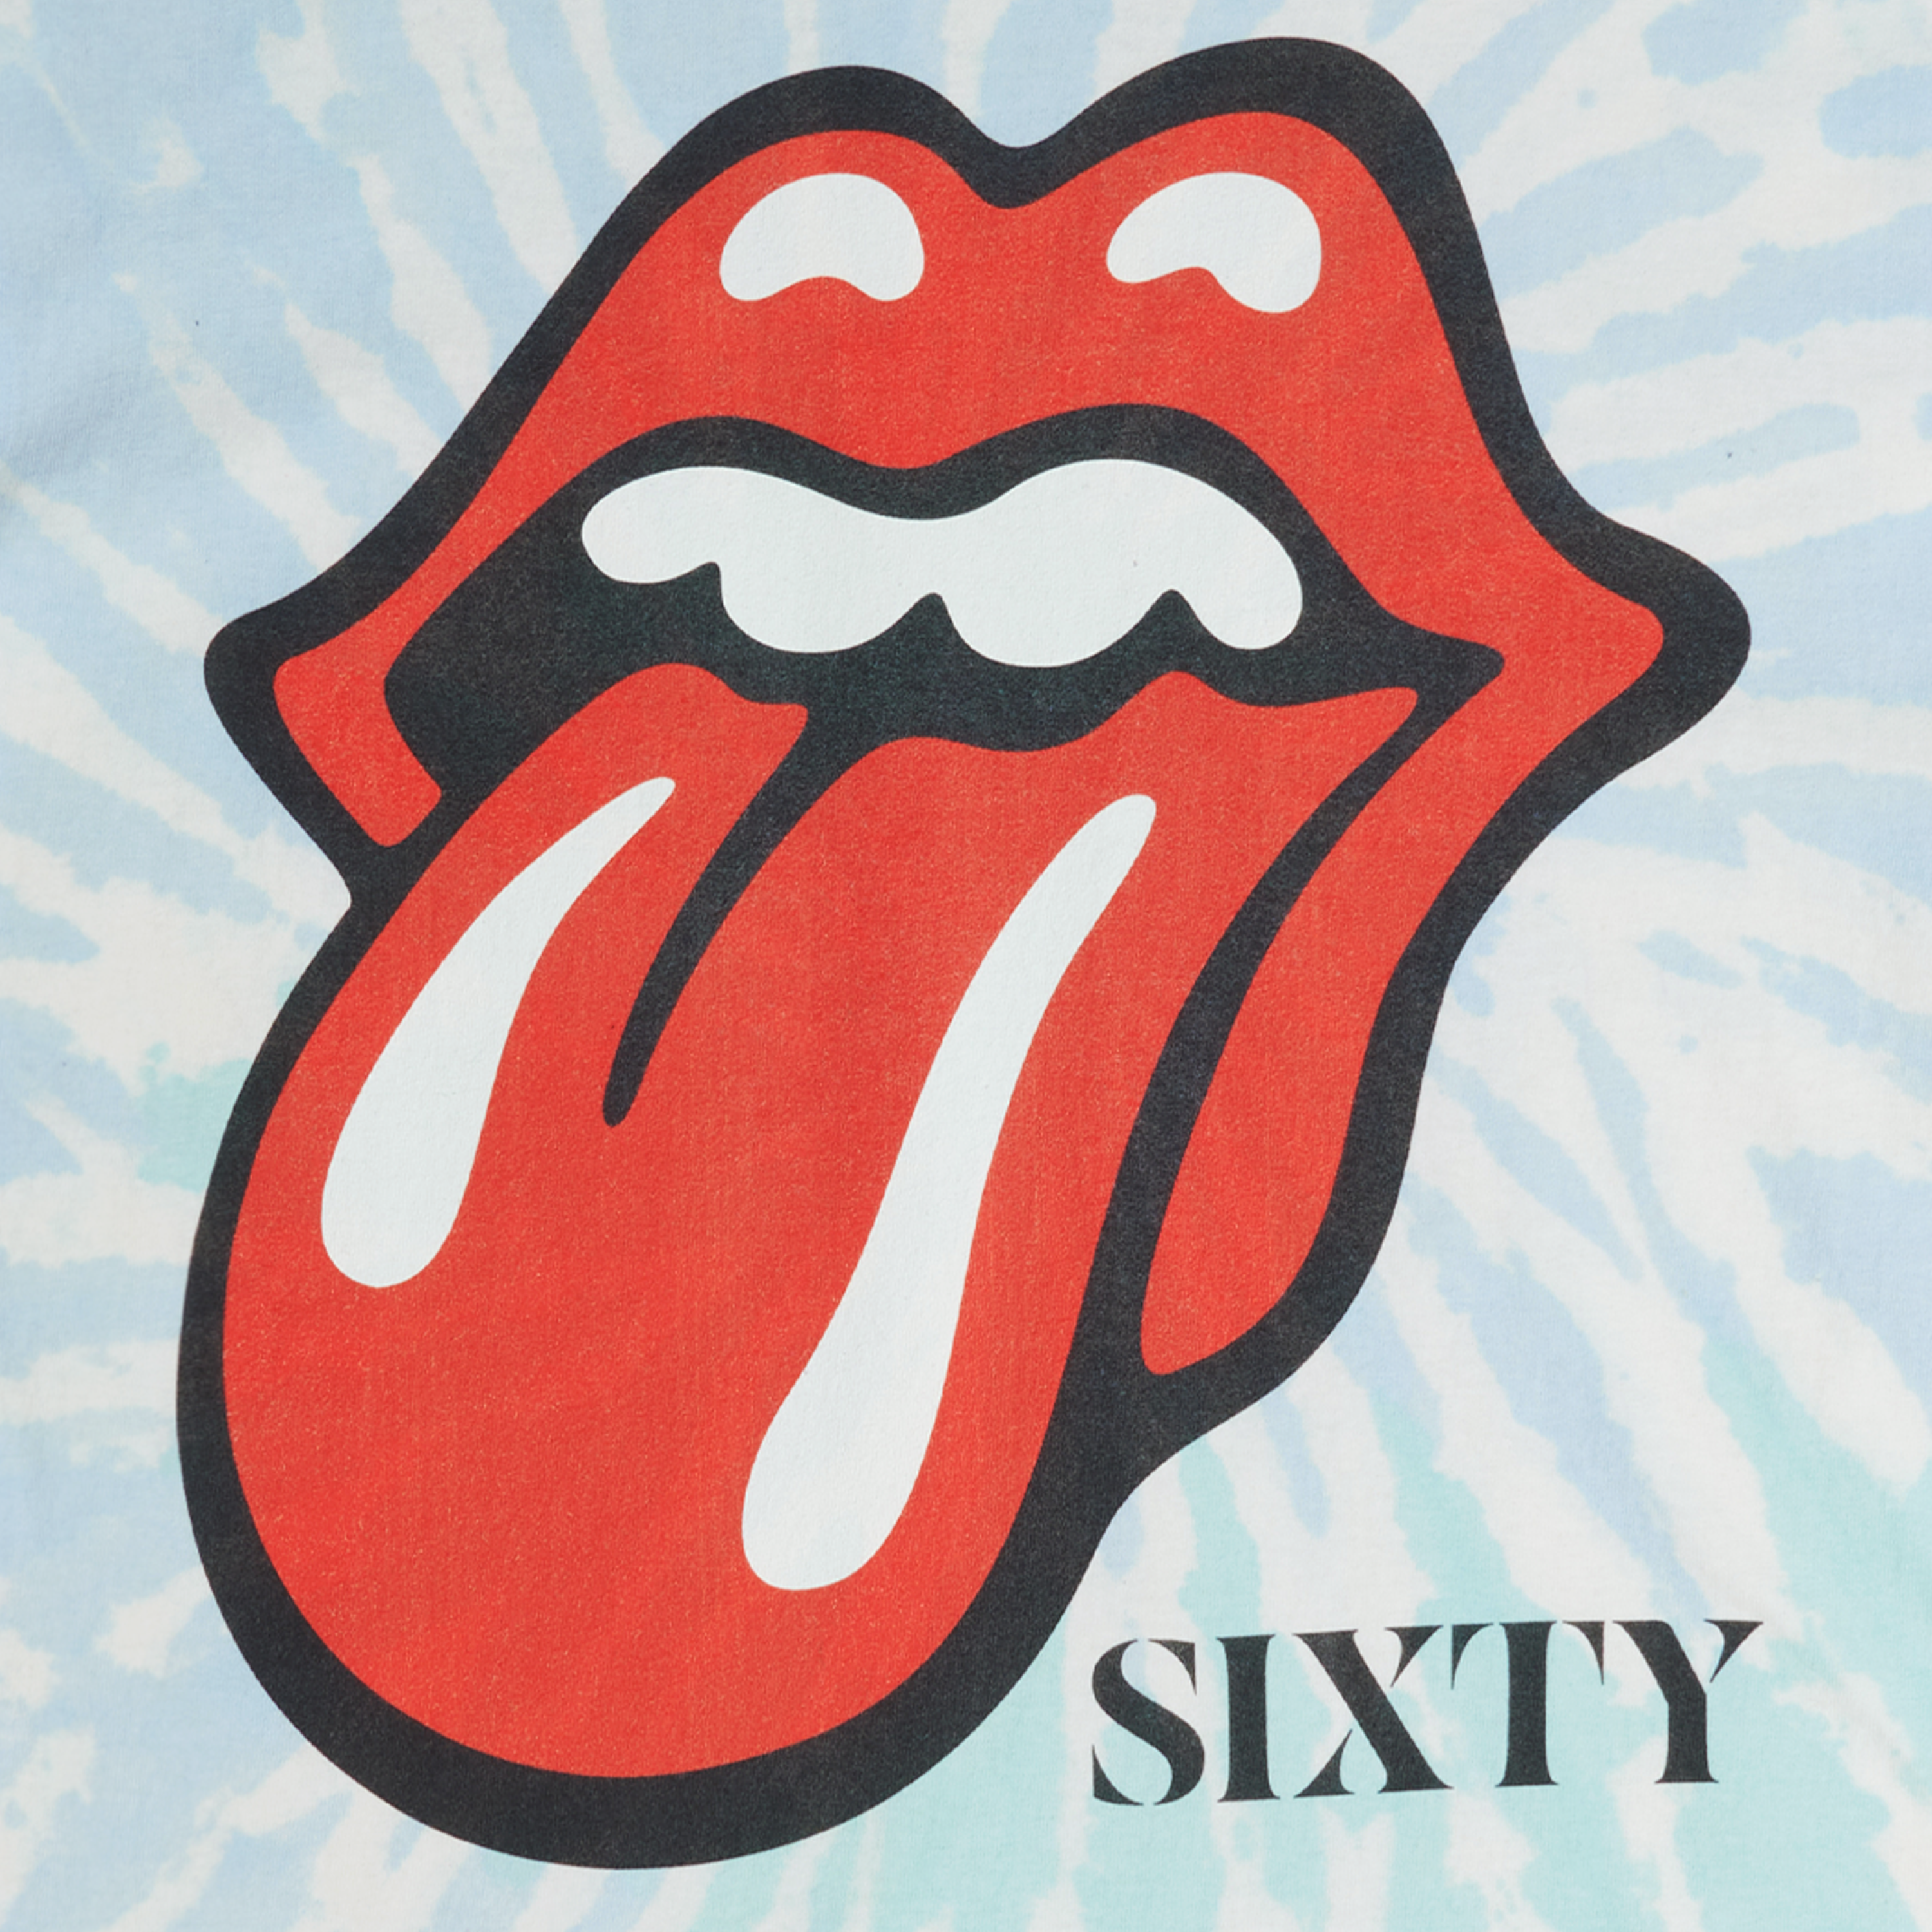 The Rolling Stones - Sixty Tie-Dye Dateback T-Shirt